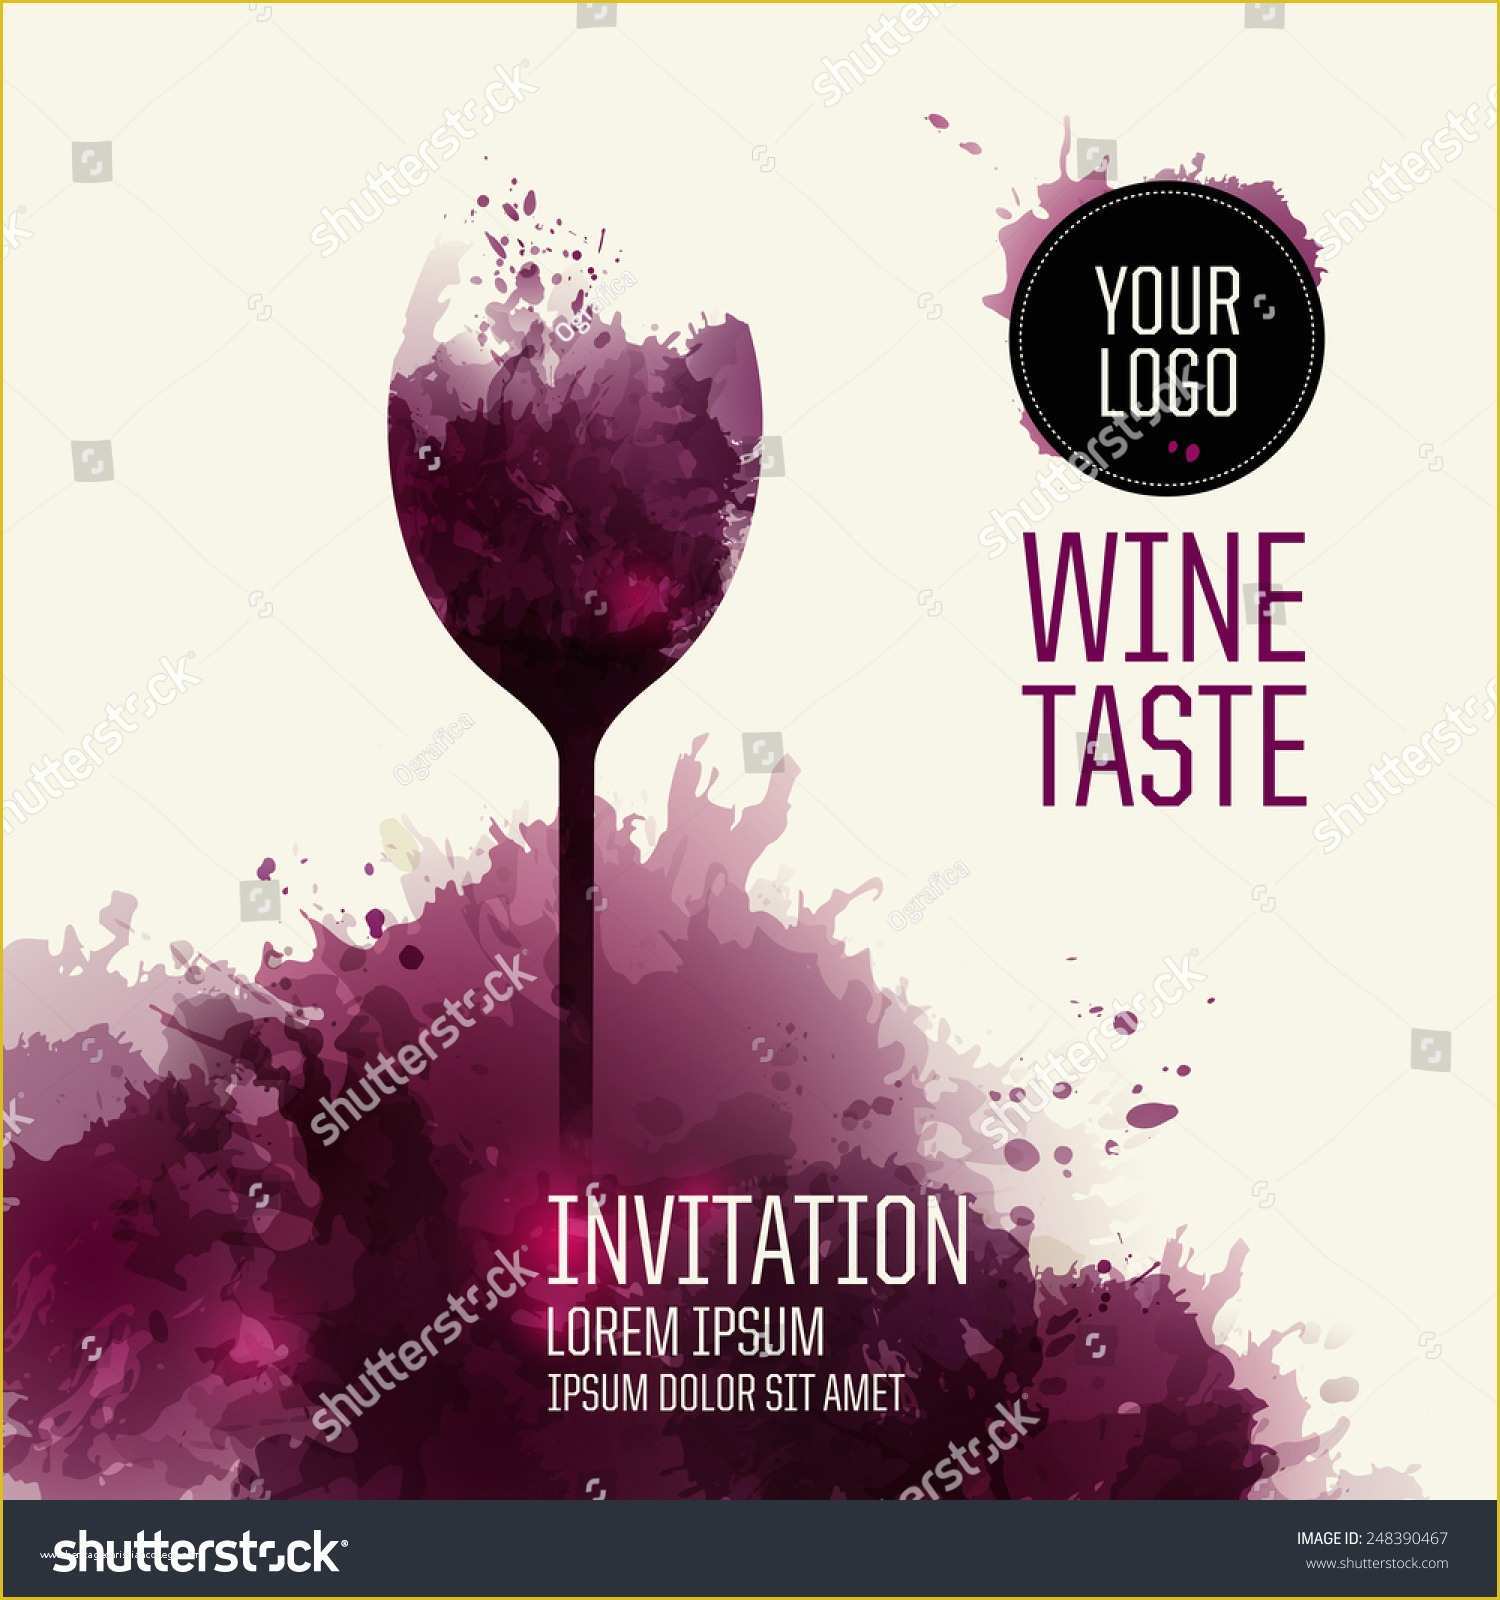 Wine Tasting Invitation Template Free Of Invitation Template event Party Suitable Tasting Stock